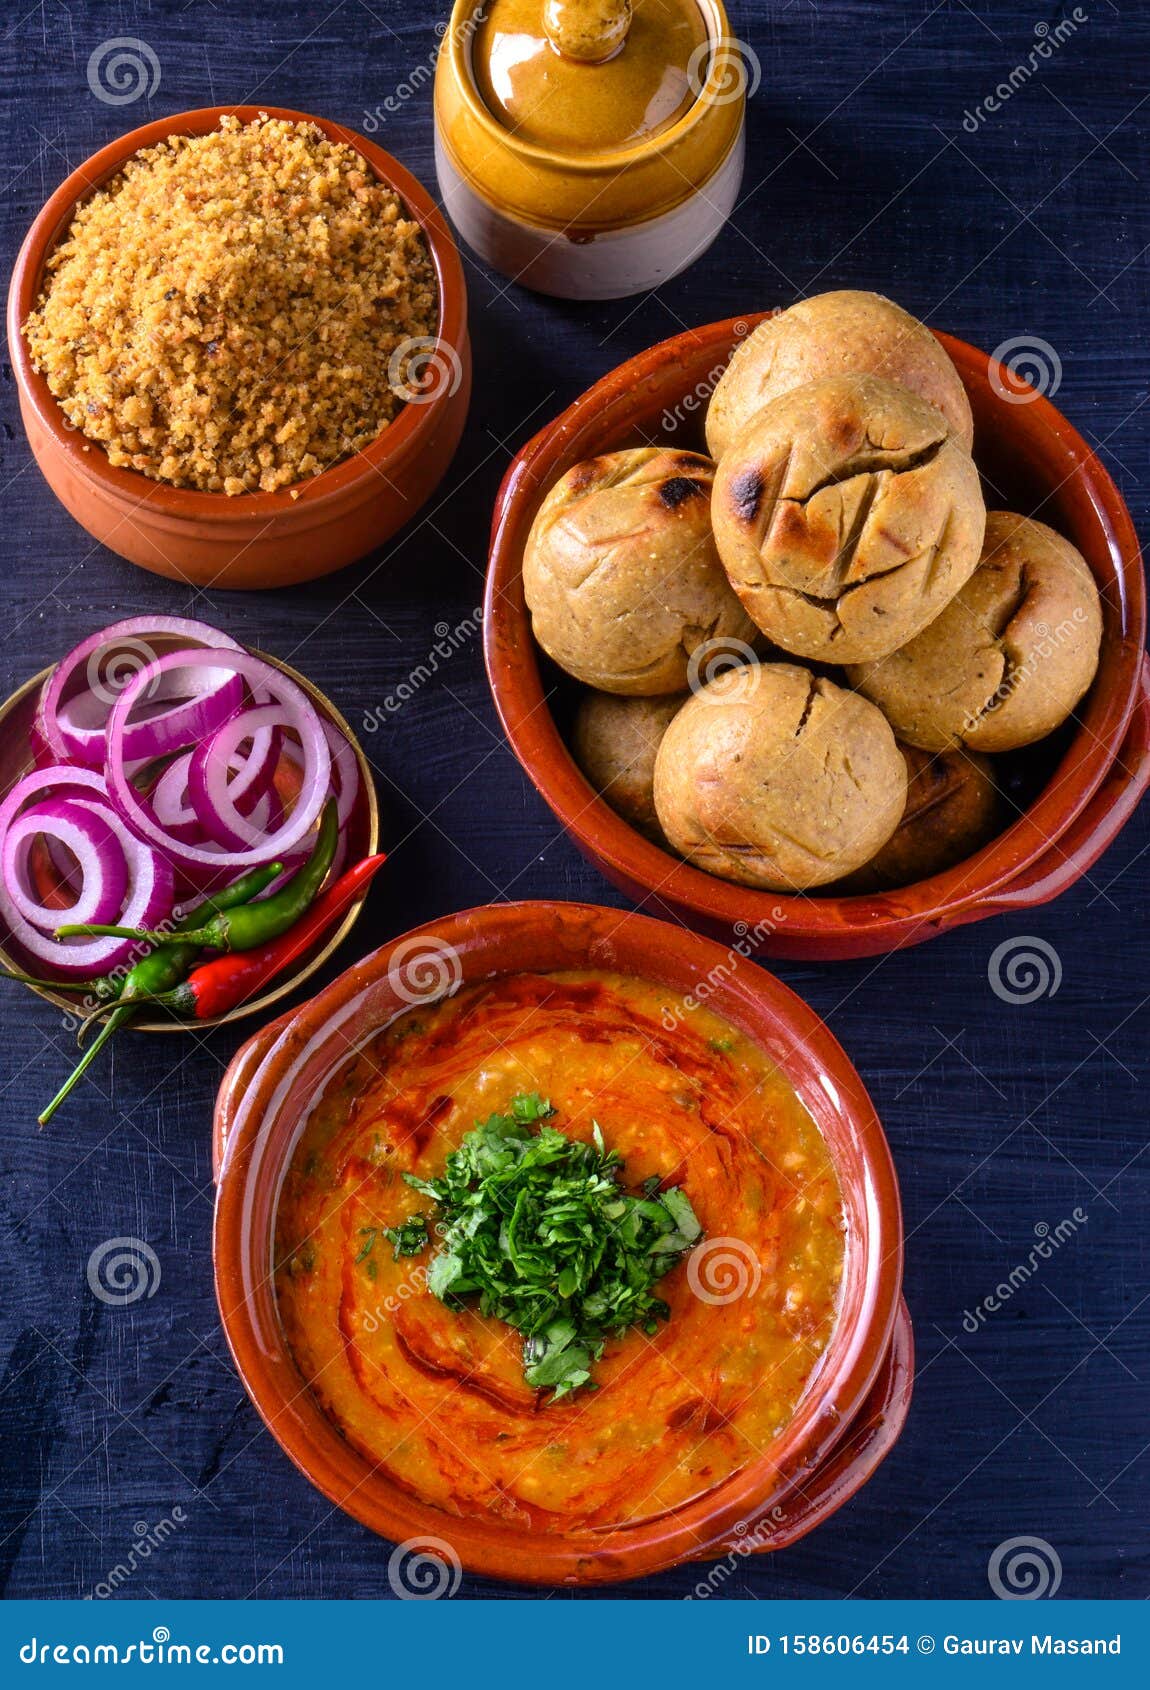 indian rajasthani meal-dal baati churma